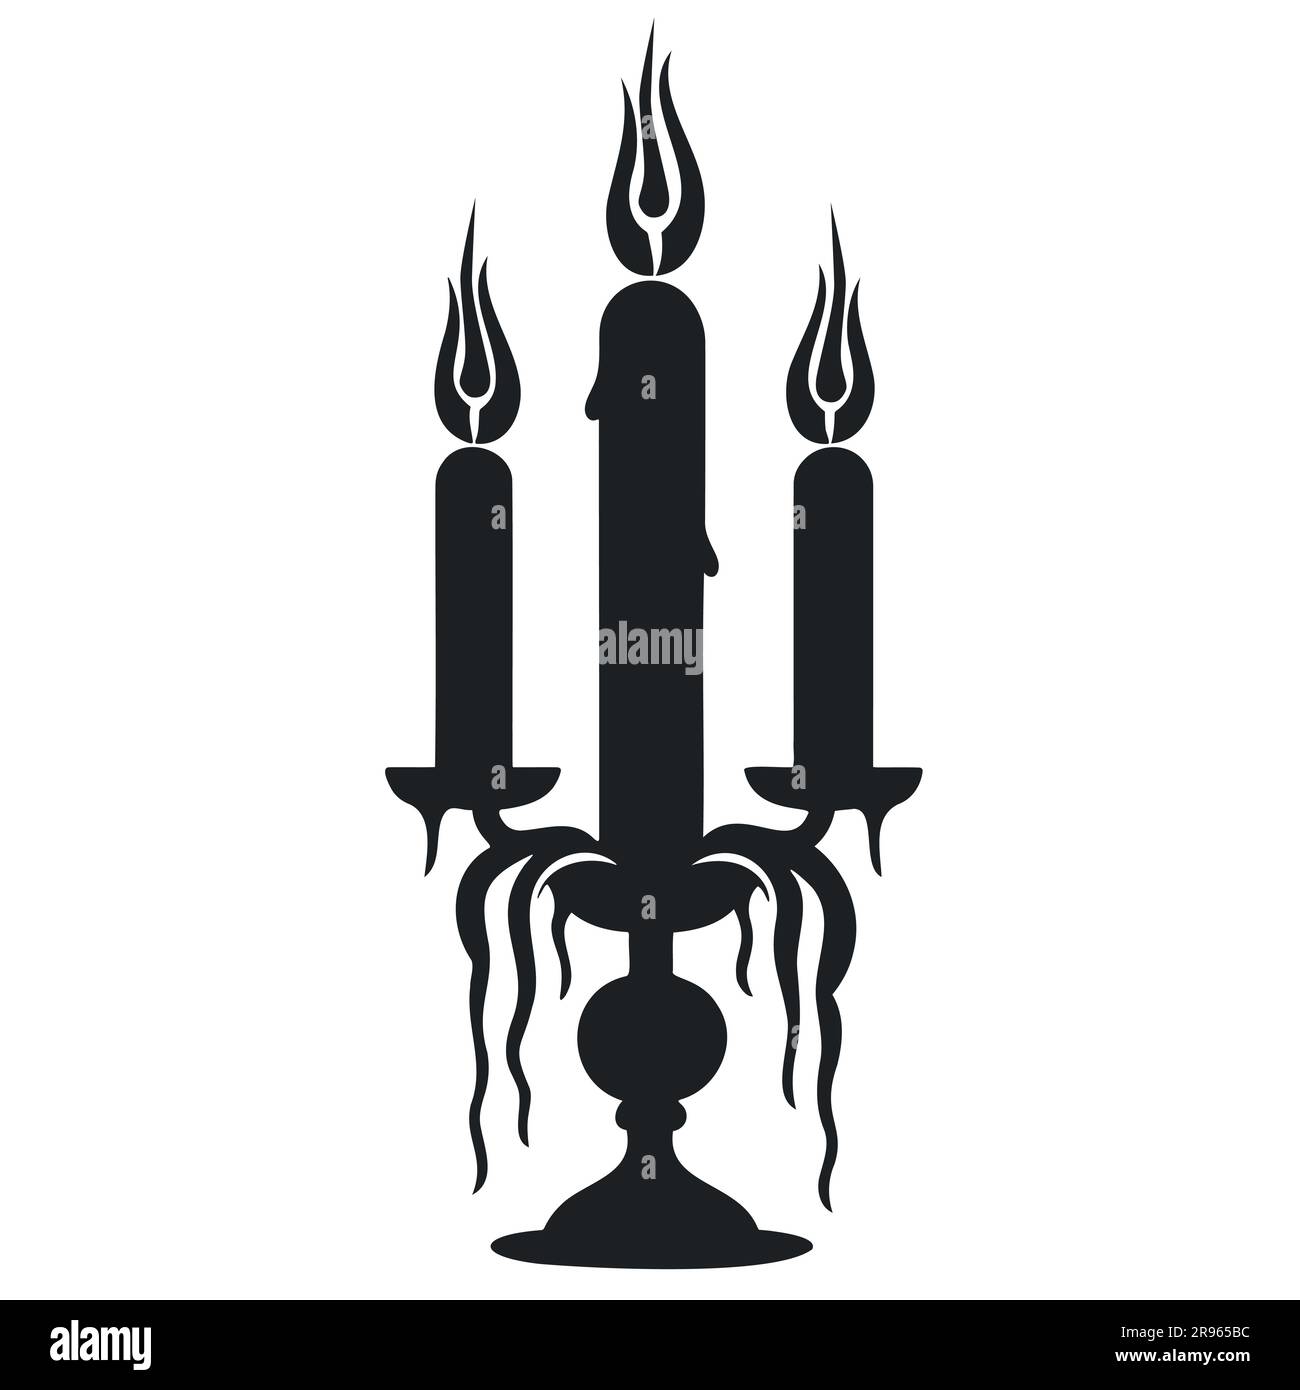 Chandelier pour trois bougies dans une silhouette noire dans un style minimaliste avec bougies. Illustration de Vecteur